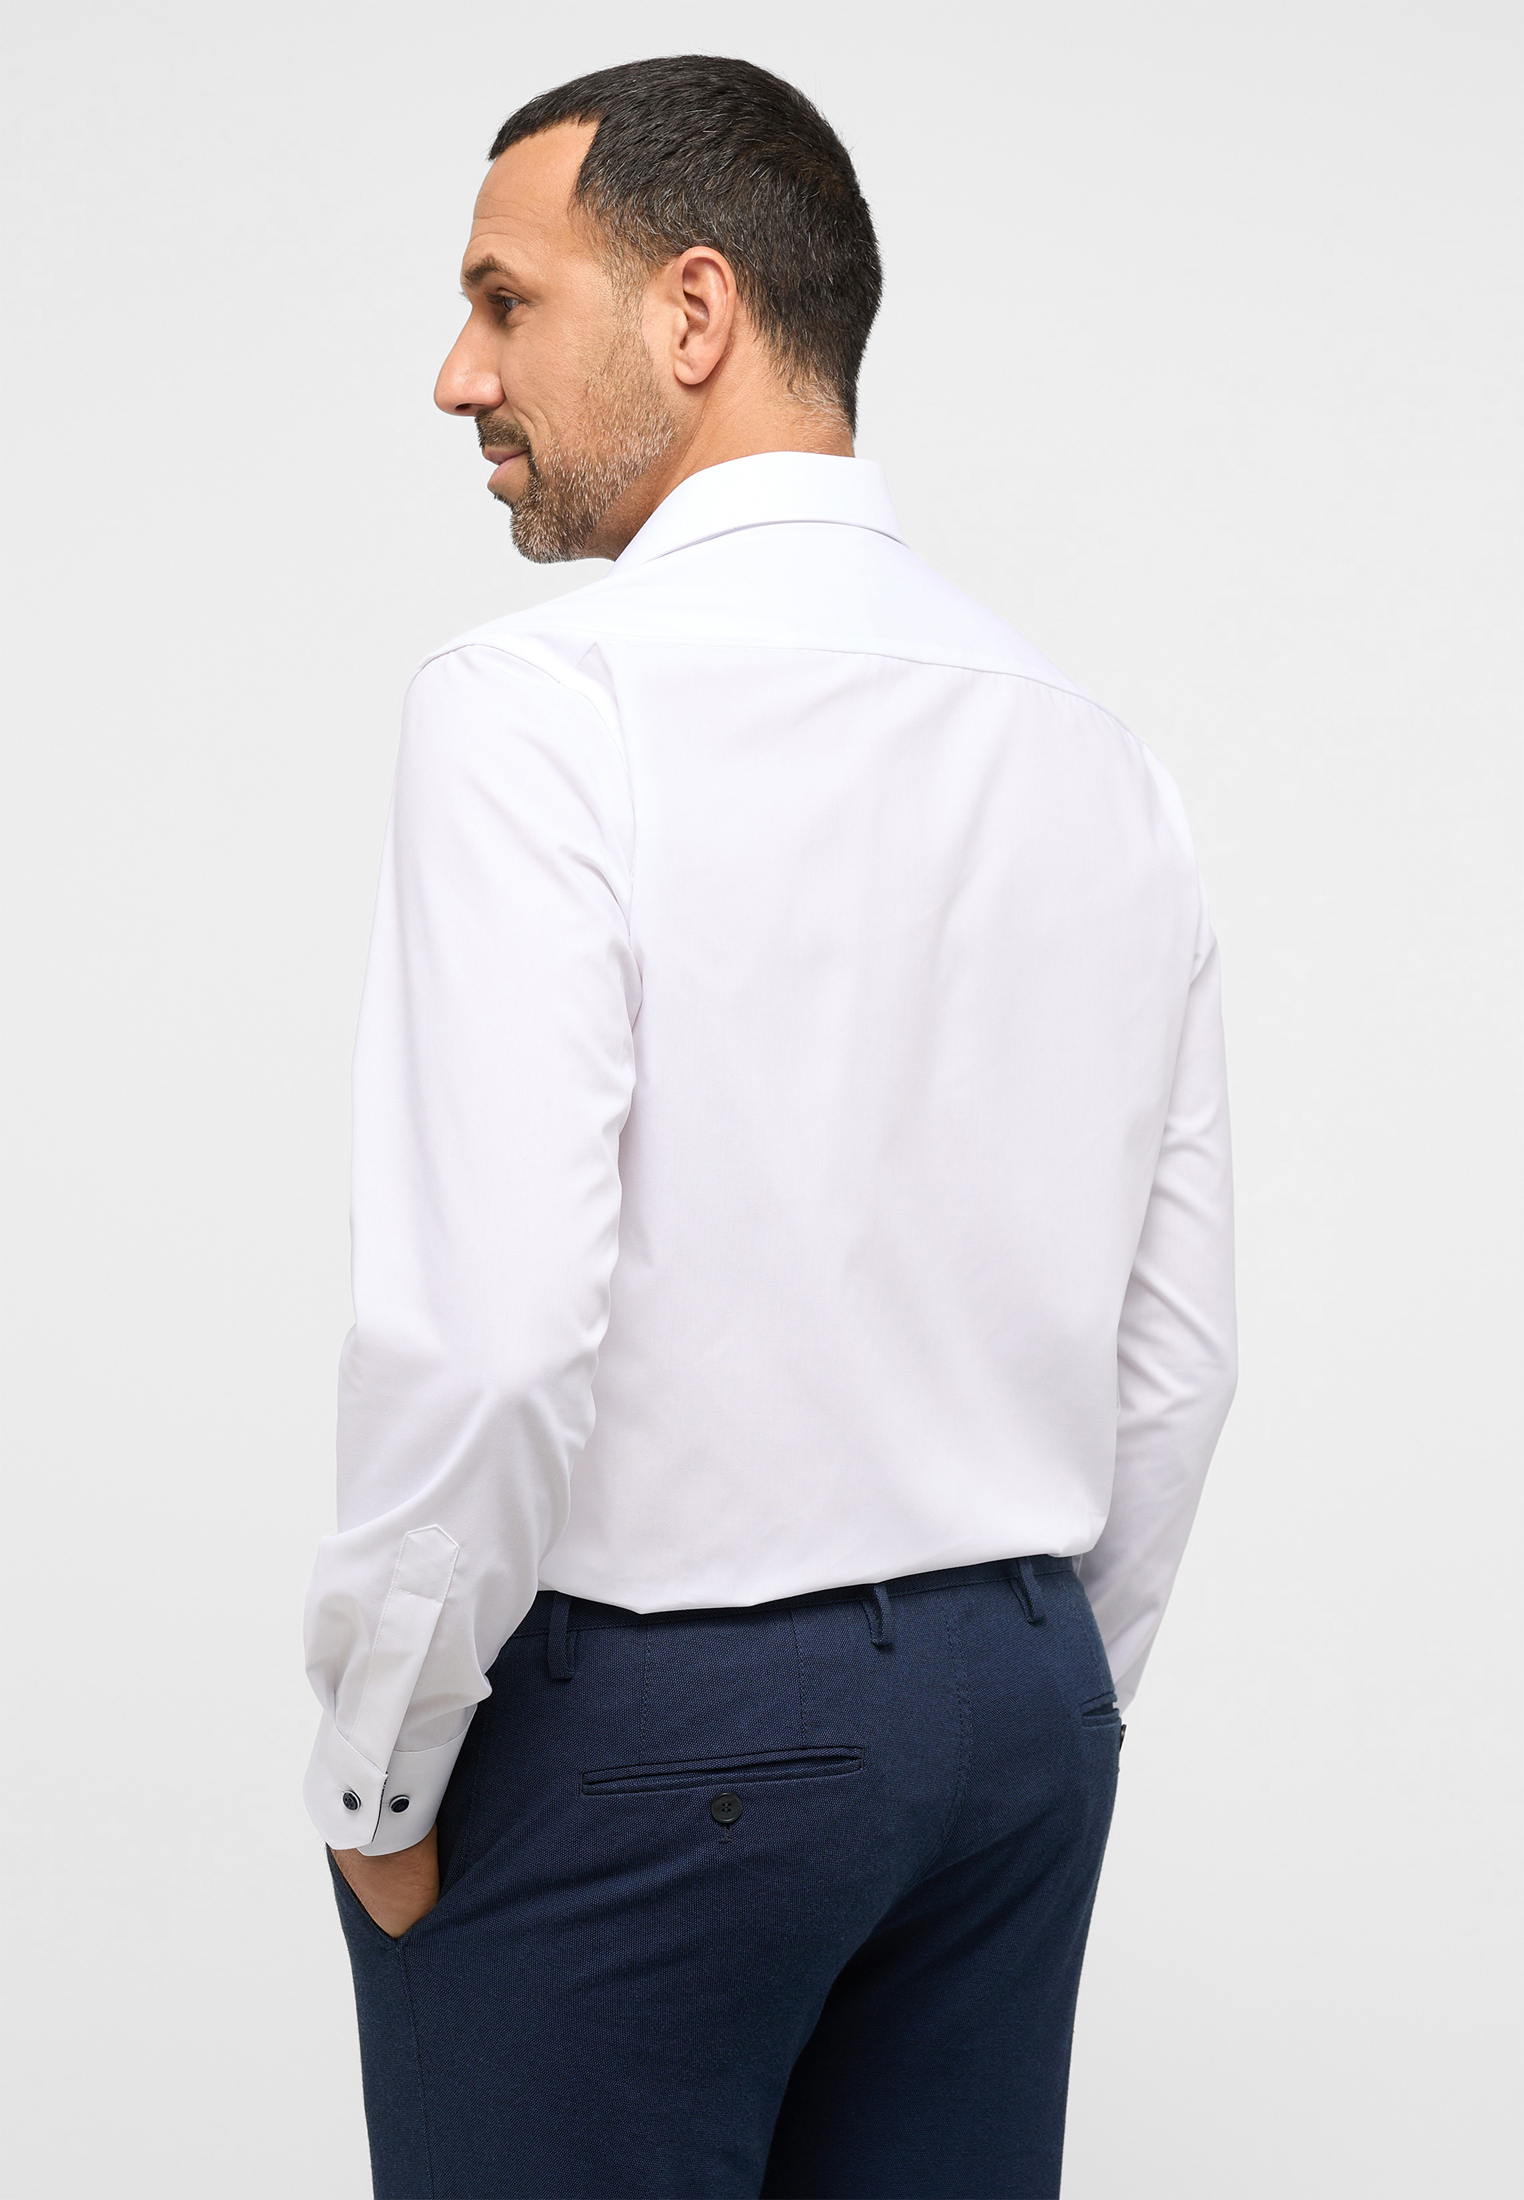 Shirt cm) weiß COMFORT Original unifarben (59 weiß FIT | Arm | 1SH11720-00-01-47-59 | verkürzter in 47 |